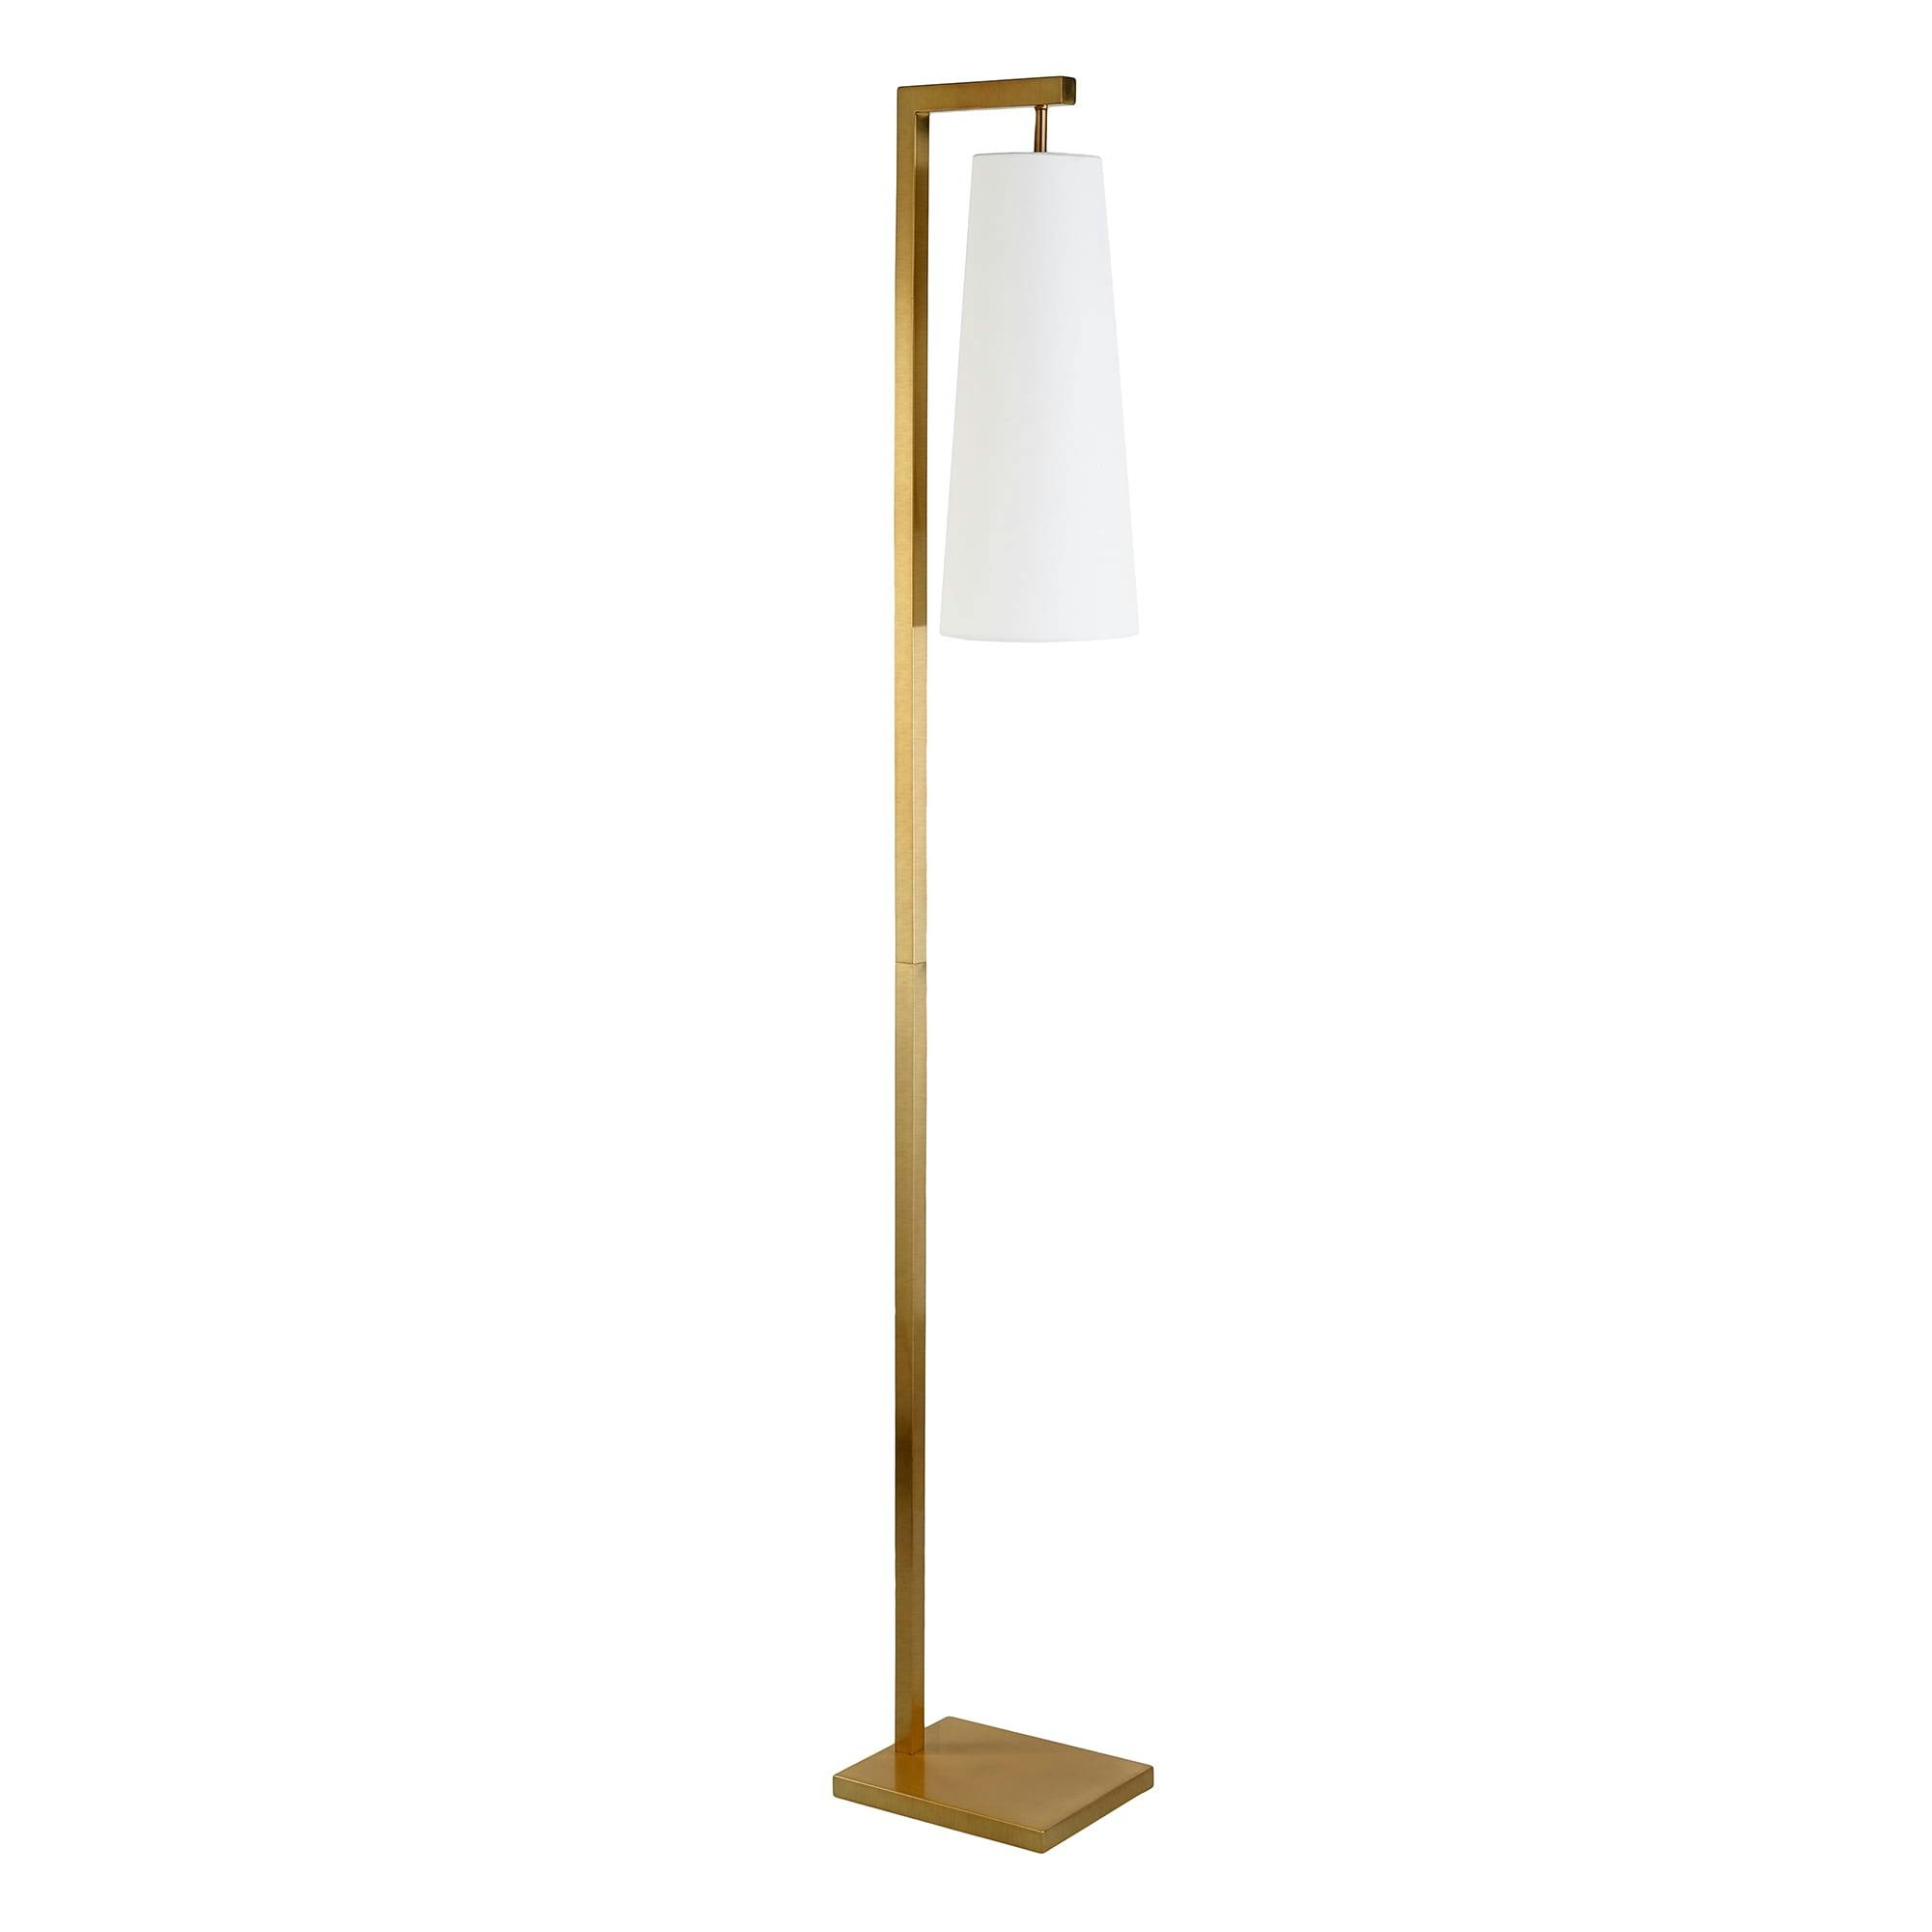 Art Deco Inspired Brass Floor Lamp with Crisp Linen Shade